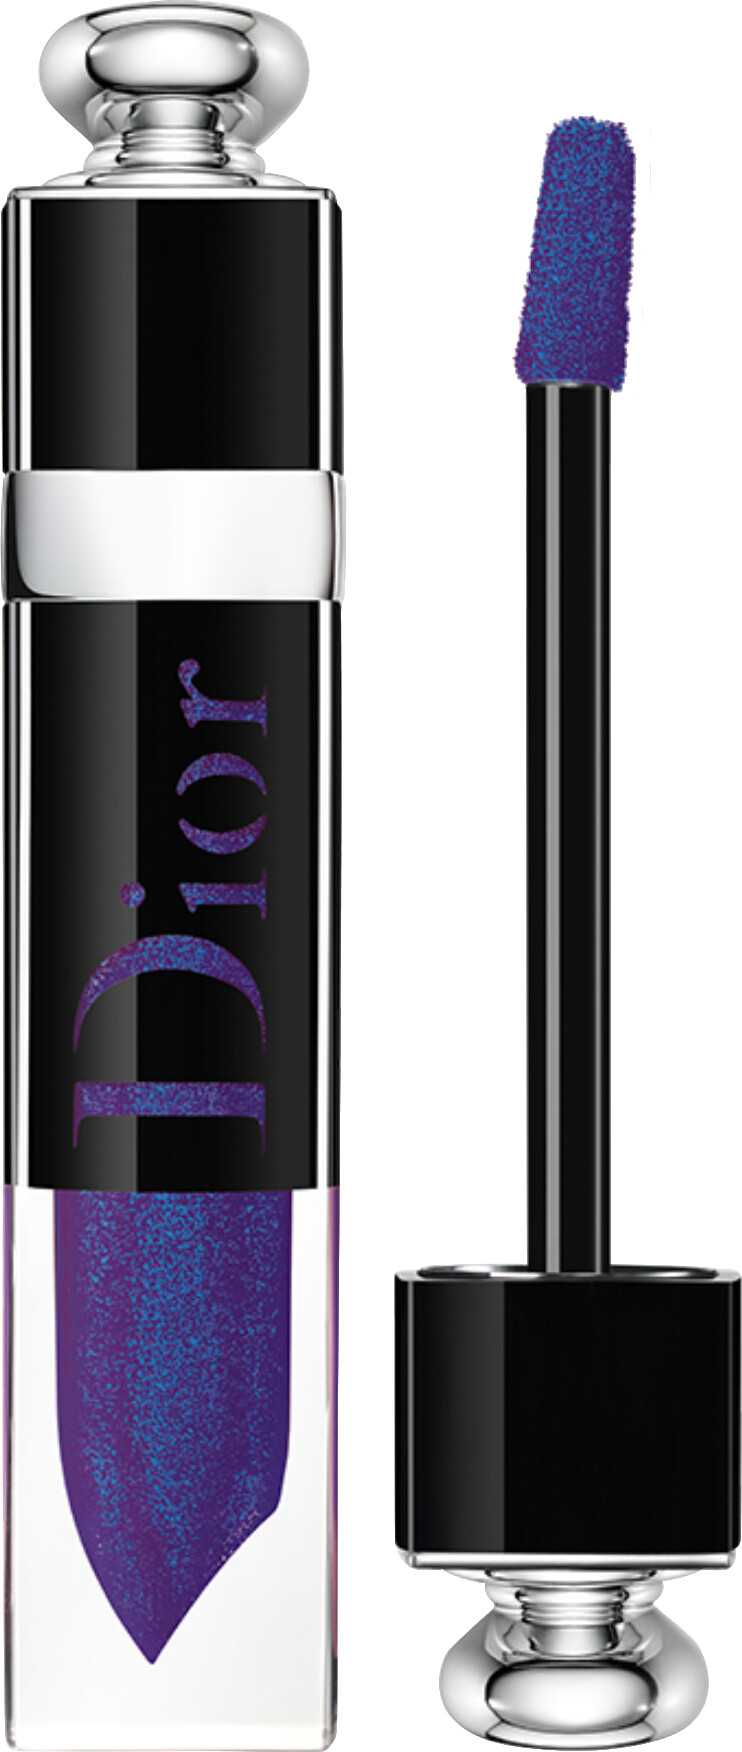 DIOR Dior Addict Lacquer Plump Lip Ink 5.5ml 898 - Midnight Star